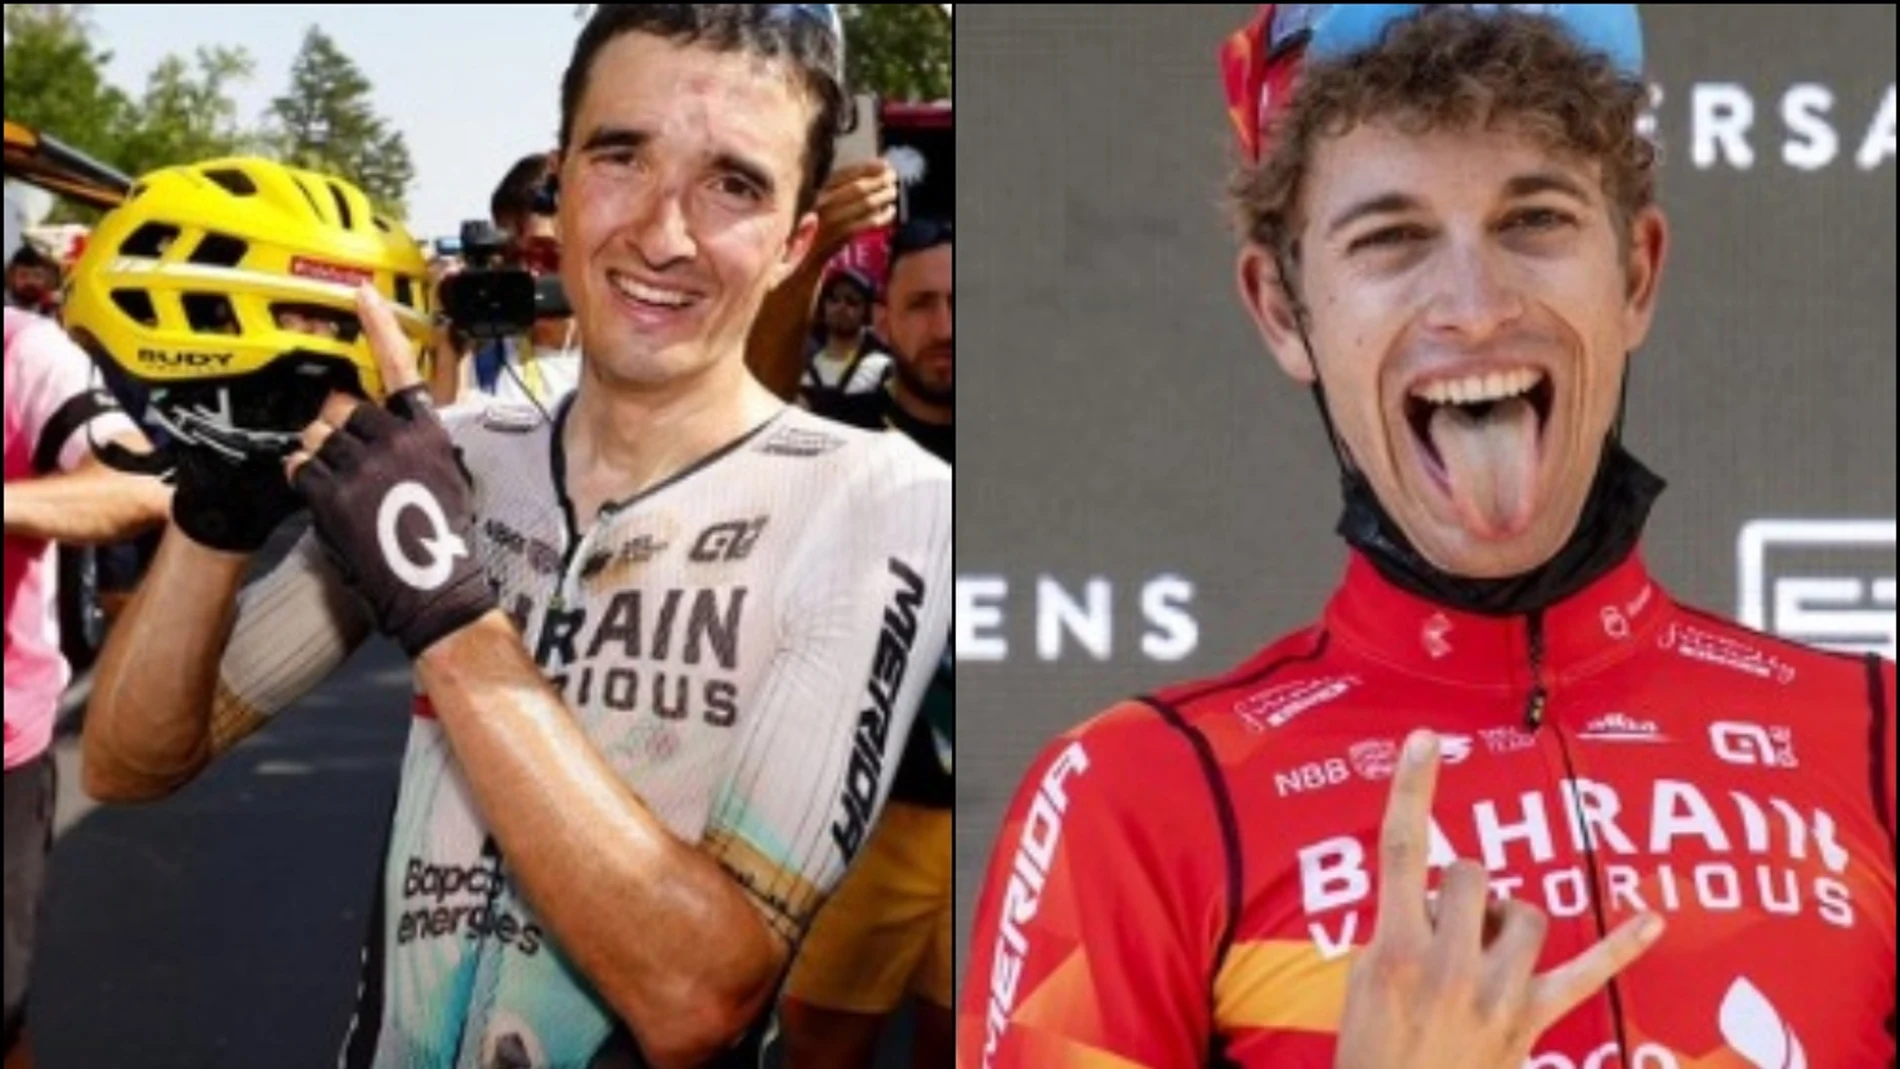 La emotiva dedicatoria de Pello Bilbao con el fallecido Gino Mäder tras ganar en elTour de Francia